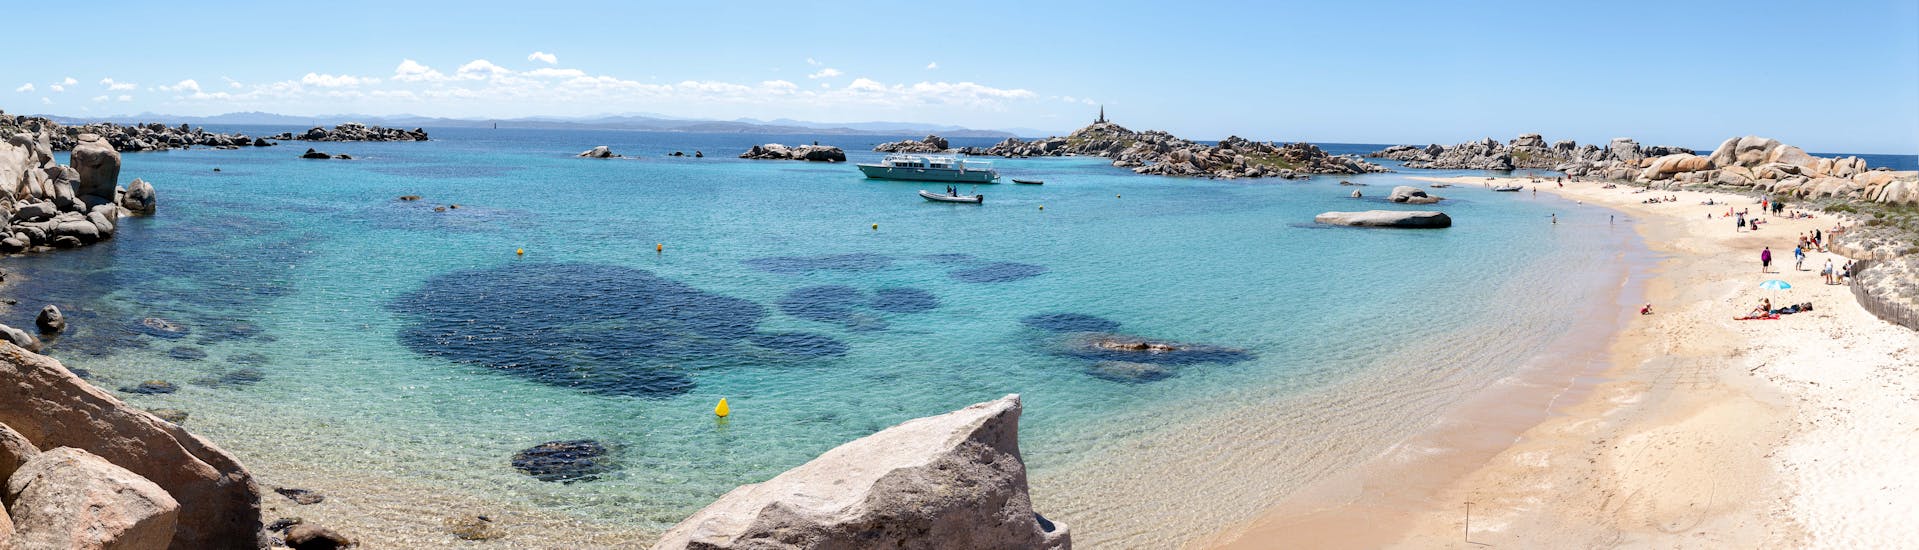 Überblick über die Insel Lavezzi während der Private Bootstour ab Santa Teresa di Gallura nach Corsica mit Estasi Escursioni Santa Teresa di Gallura.